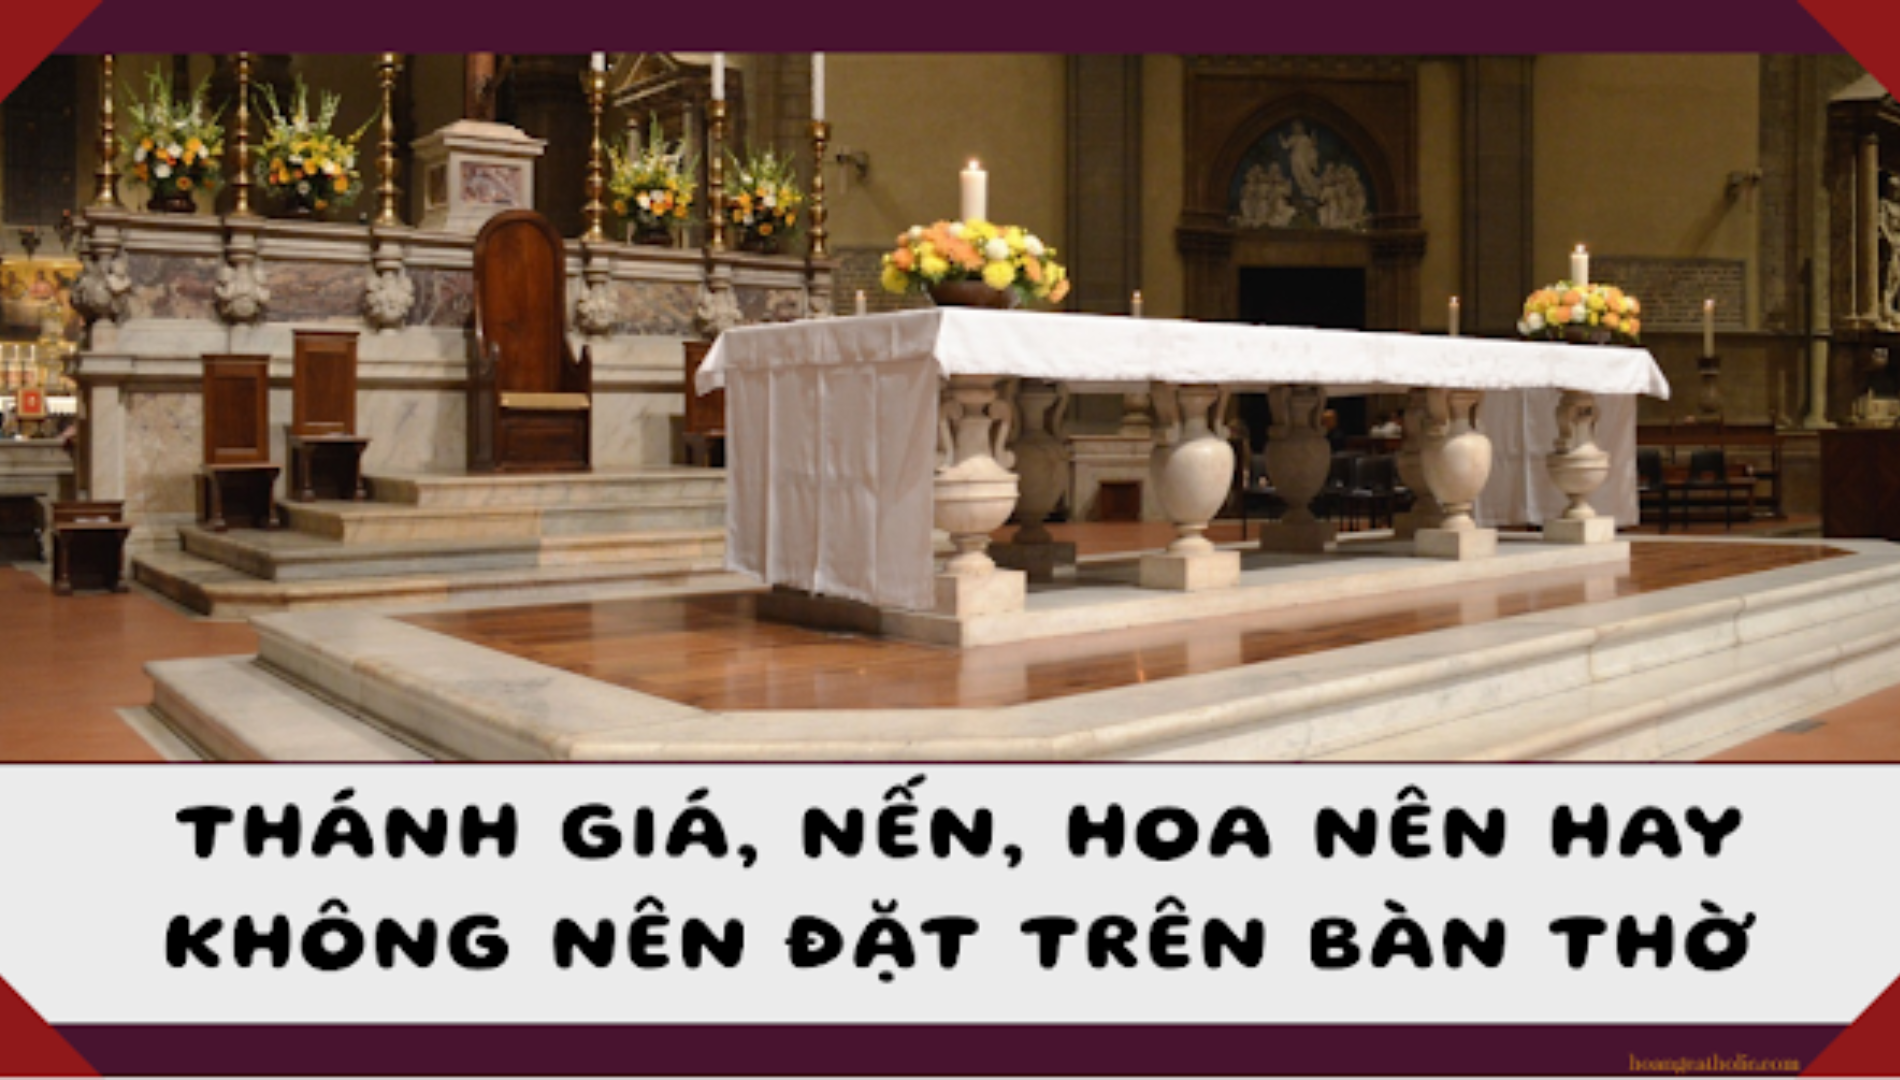 Thánh giá, nến, hoa: nên hay không nên đặt trên bàn thờ